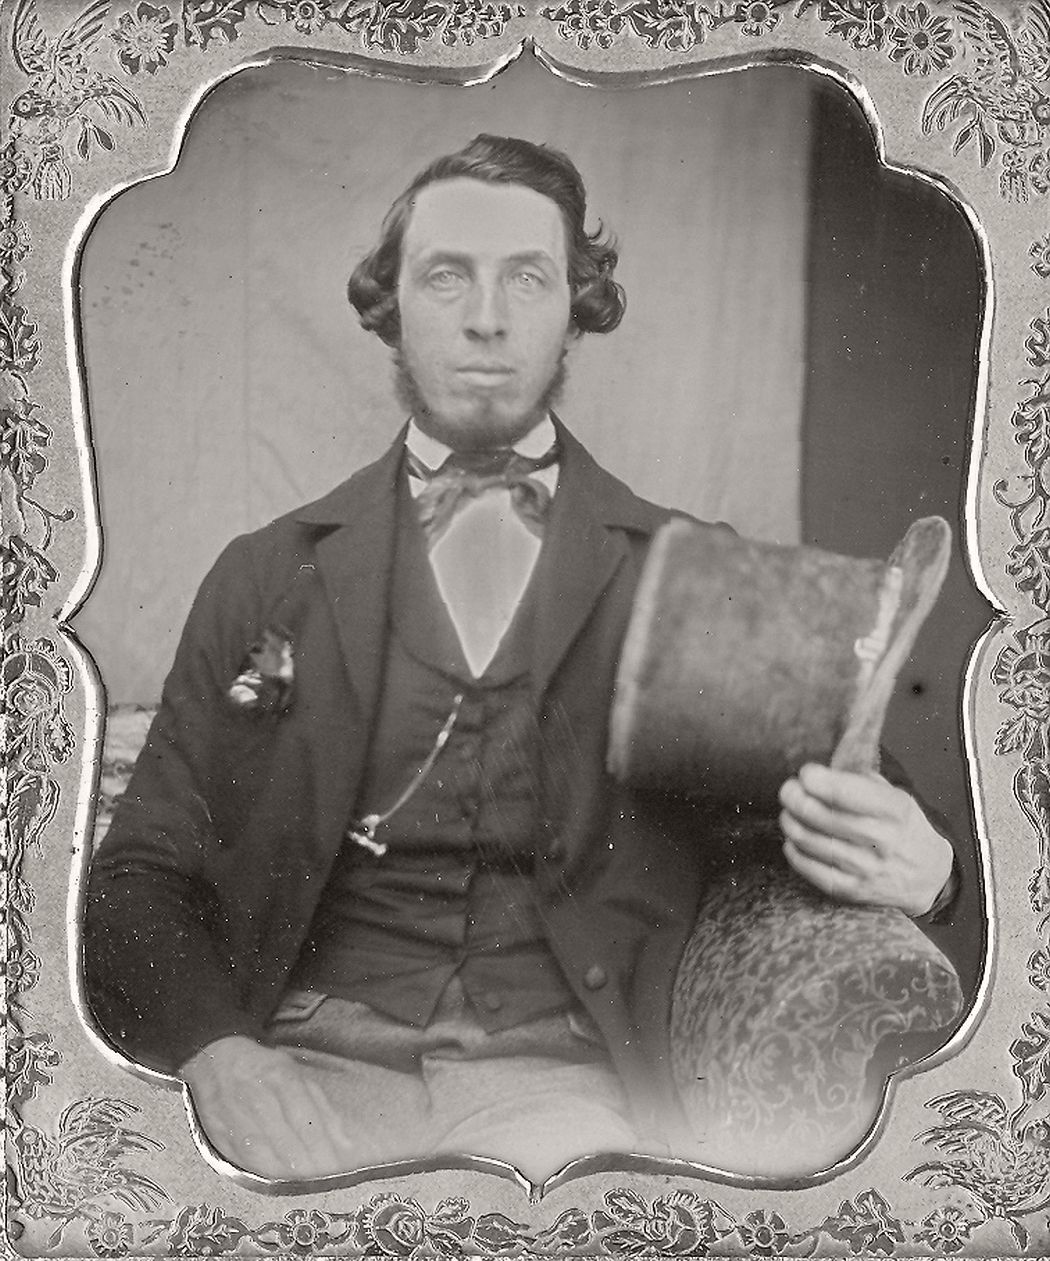 victorian-era-daguerreotype-of-men-in-hat-1850s-xix-century-05